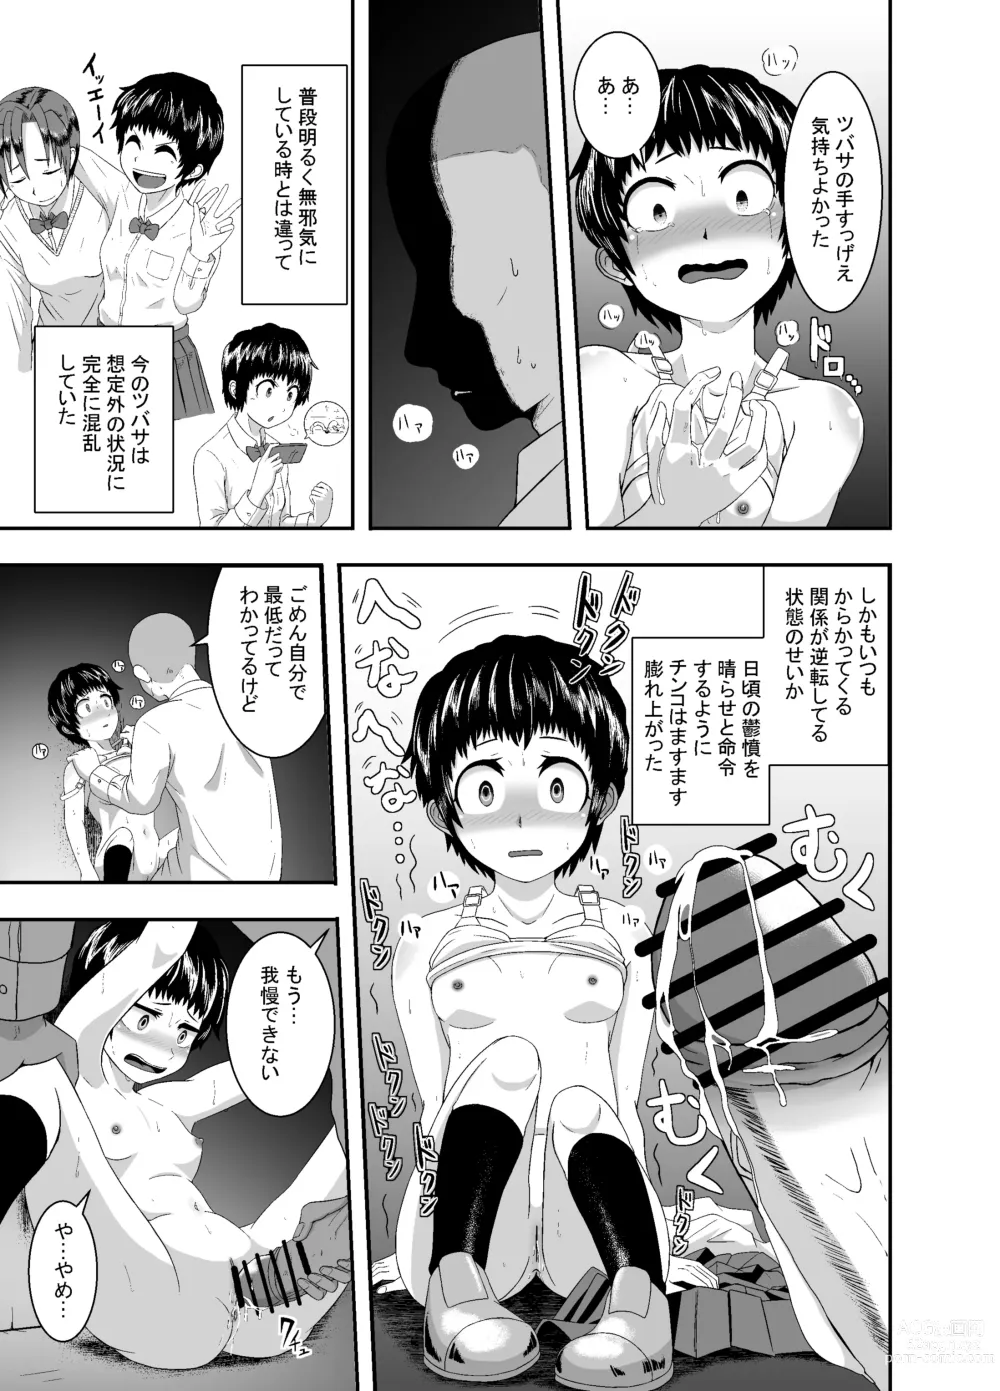 Page 30 of doujinshi Kimi ga Yarareru Kurai nara ~Genkikko Crisis~